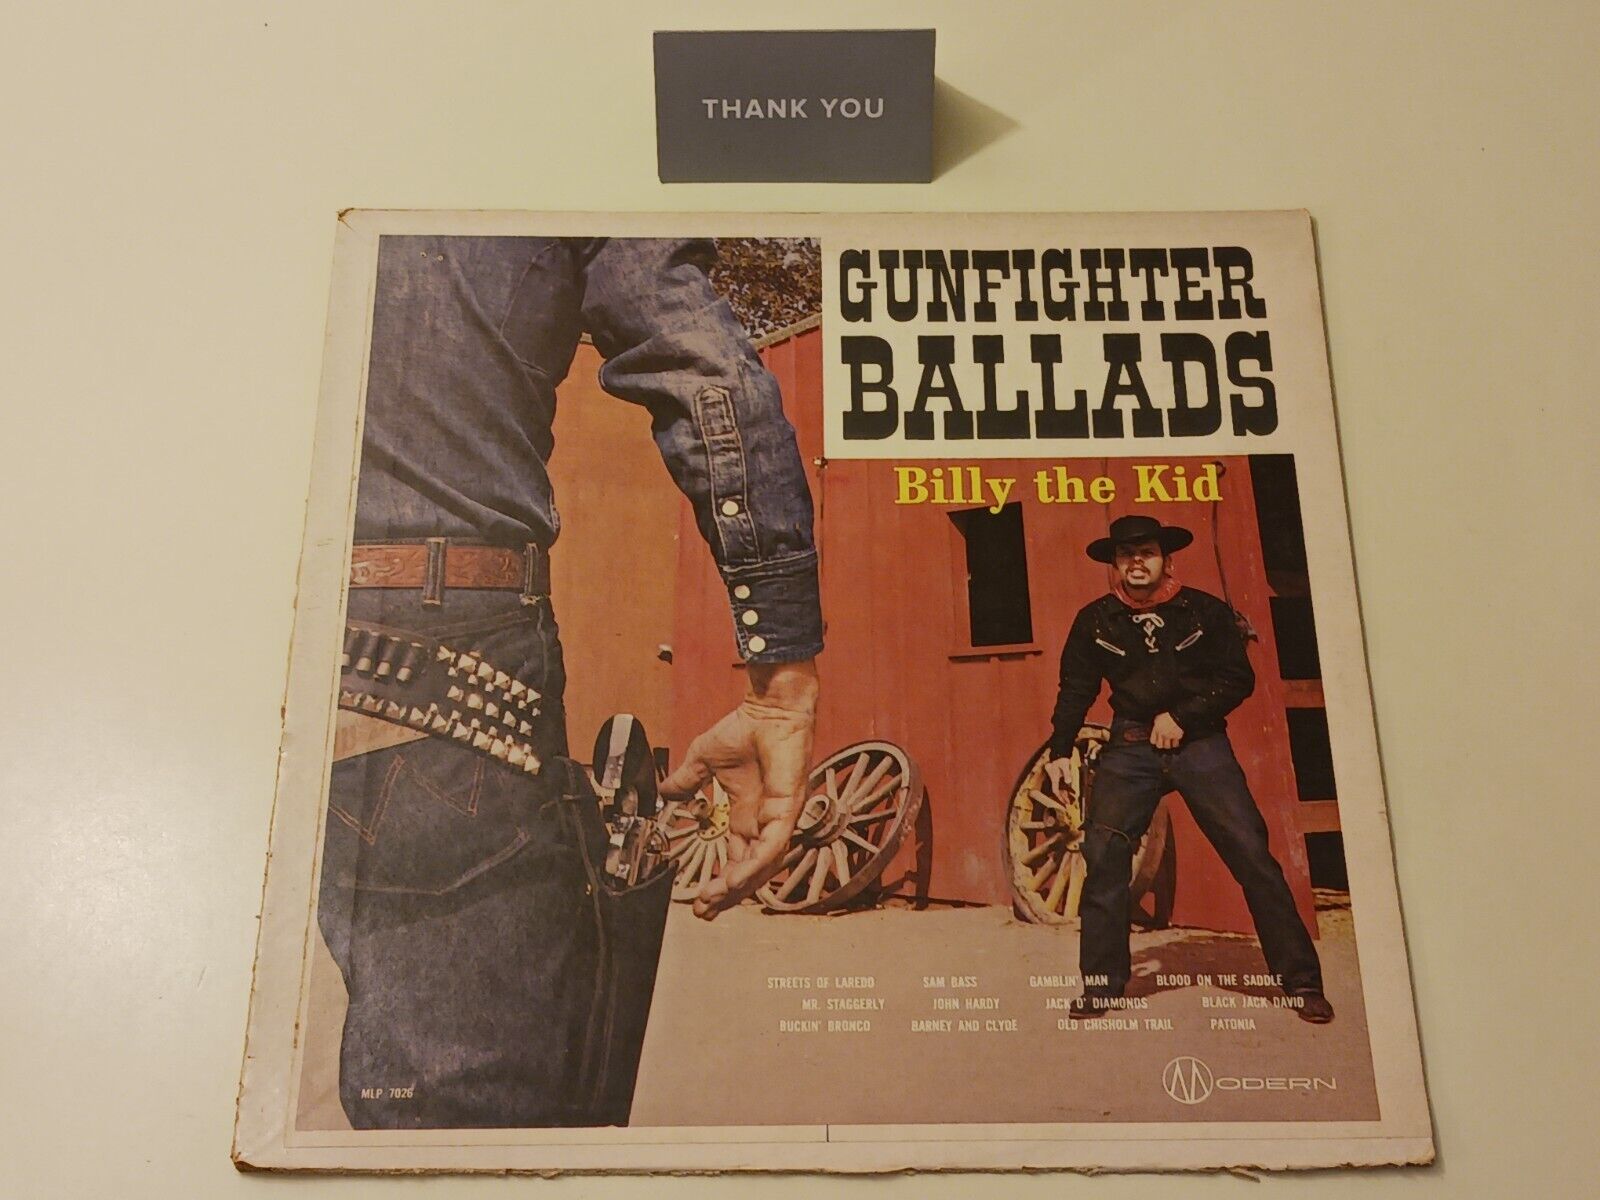 Gunfighter Ballads - Billy The Kid - Vinyl LP (1962) mlp 7026 Vintage Rare